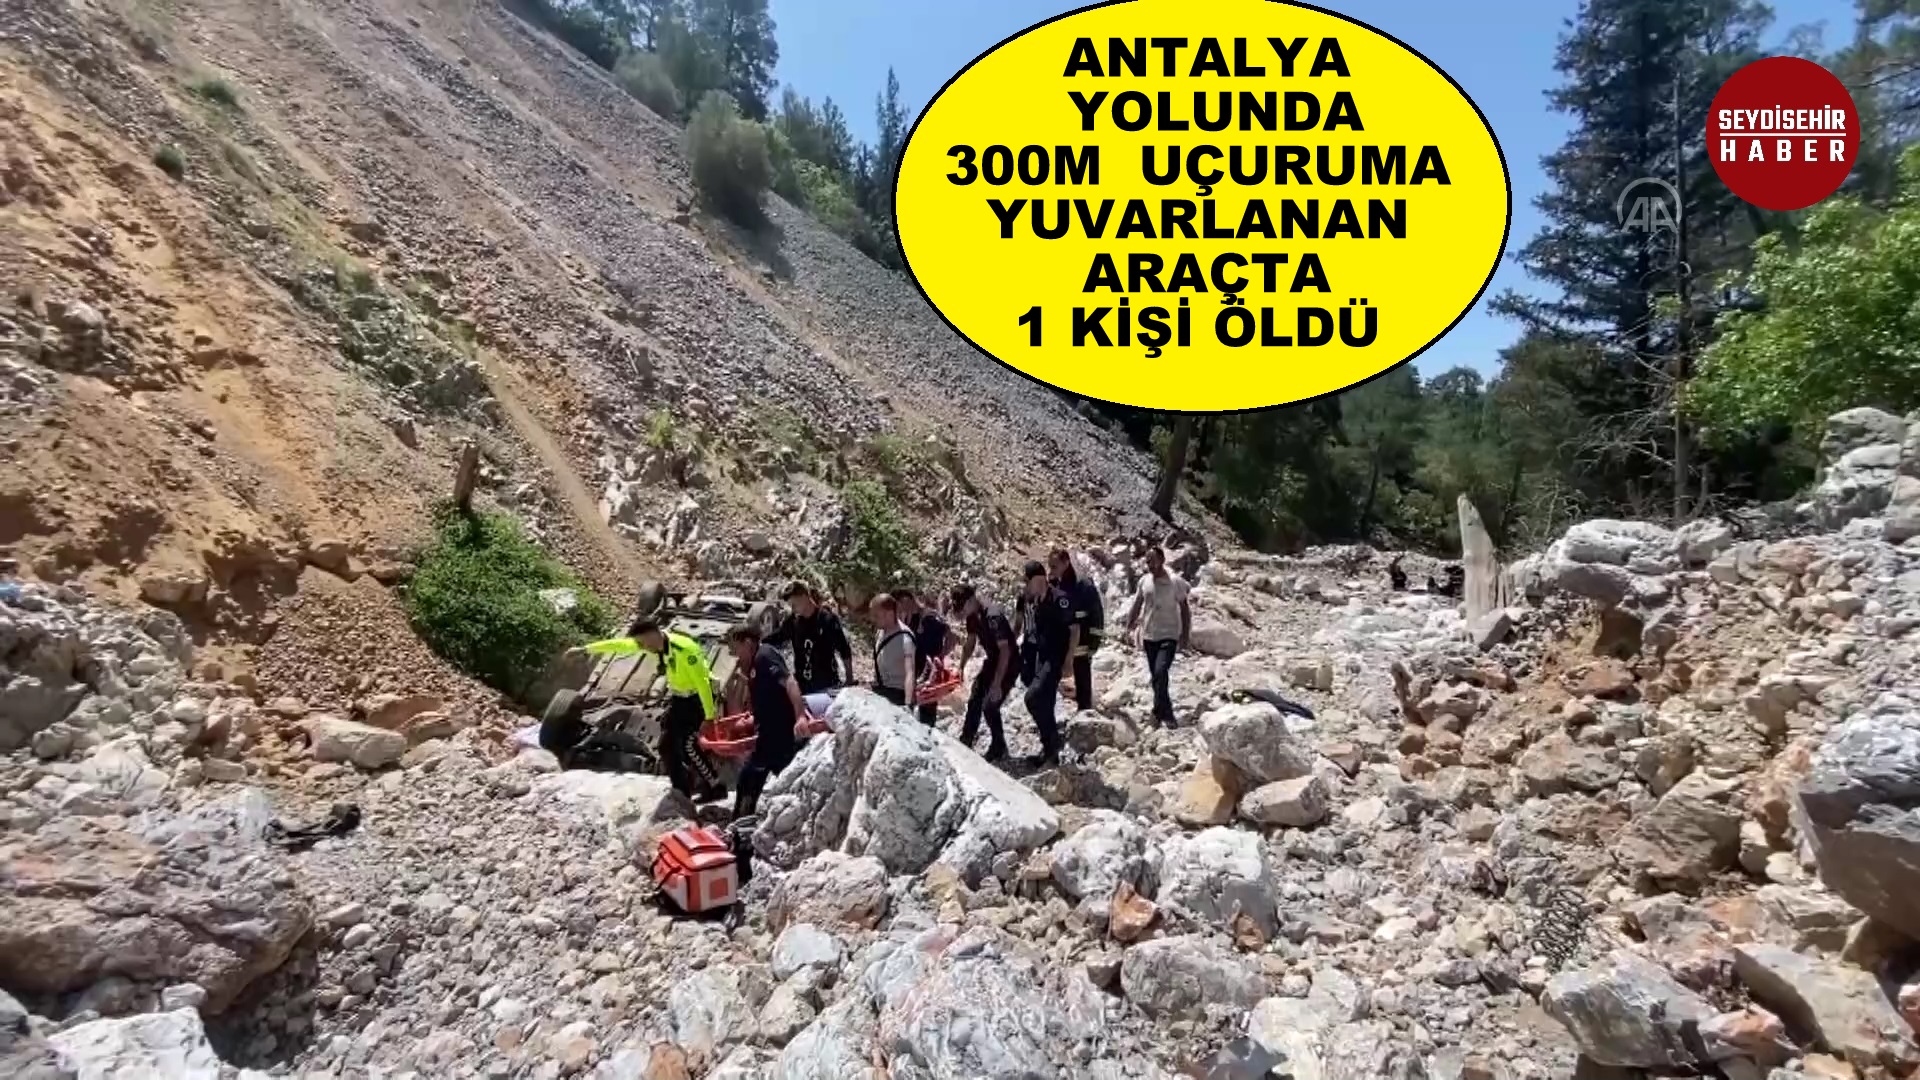 Antalya yolunda 300 metrelik uçuruma yuvarlanan araçta 1 kişi öldü, 2 kişi yaralandı.